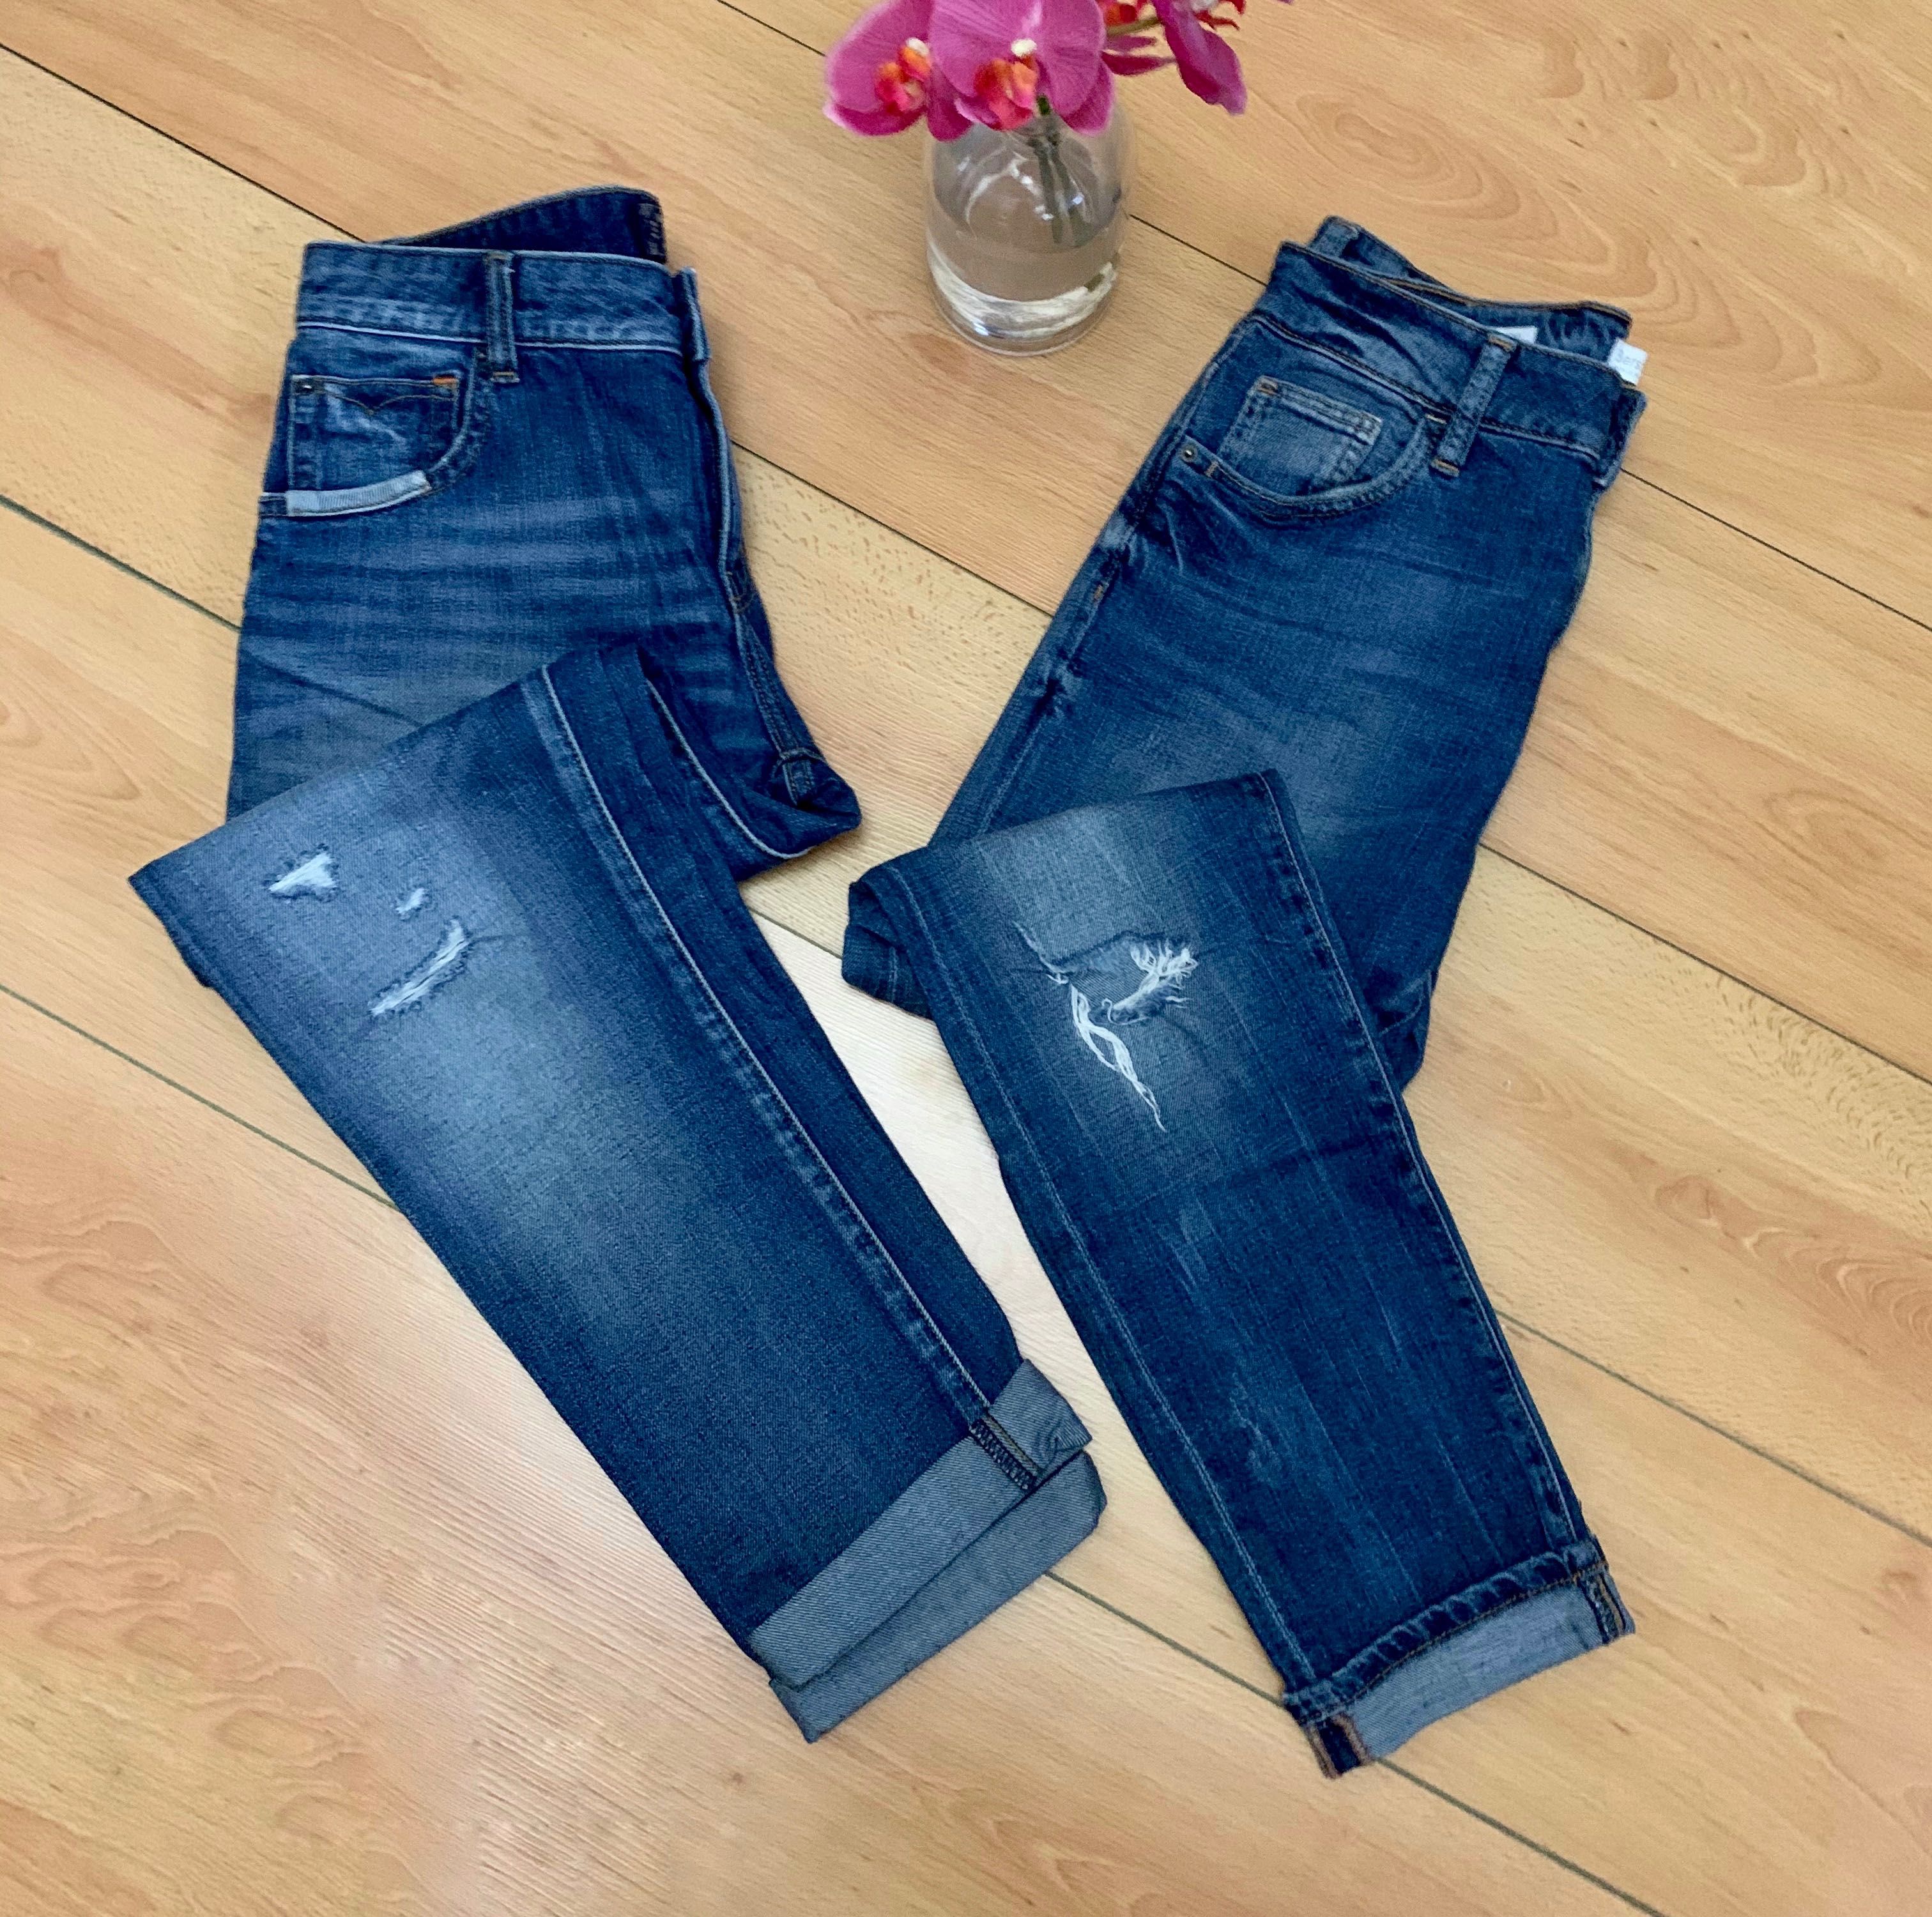 Продам джинсы бойфренды Zara и Bershka s 25 размер